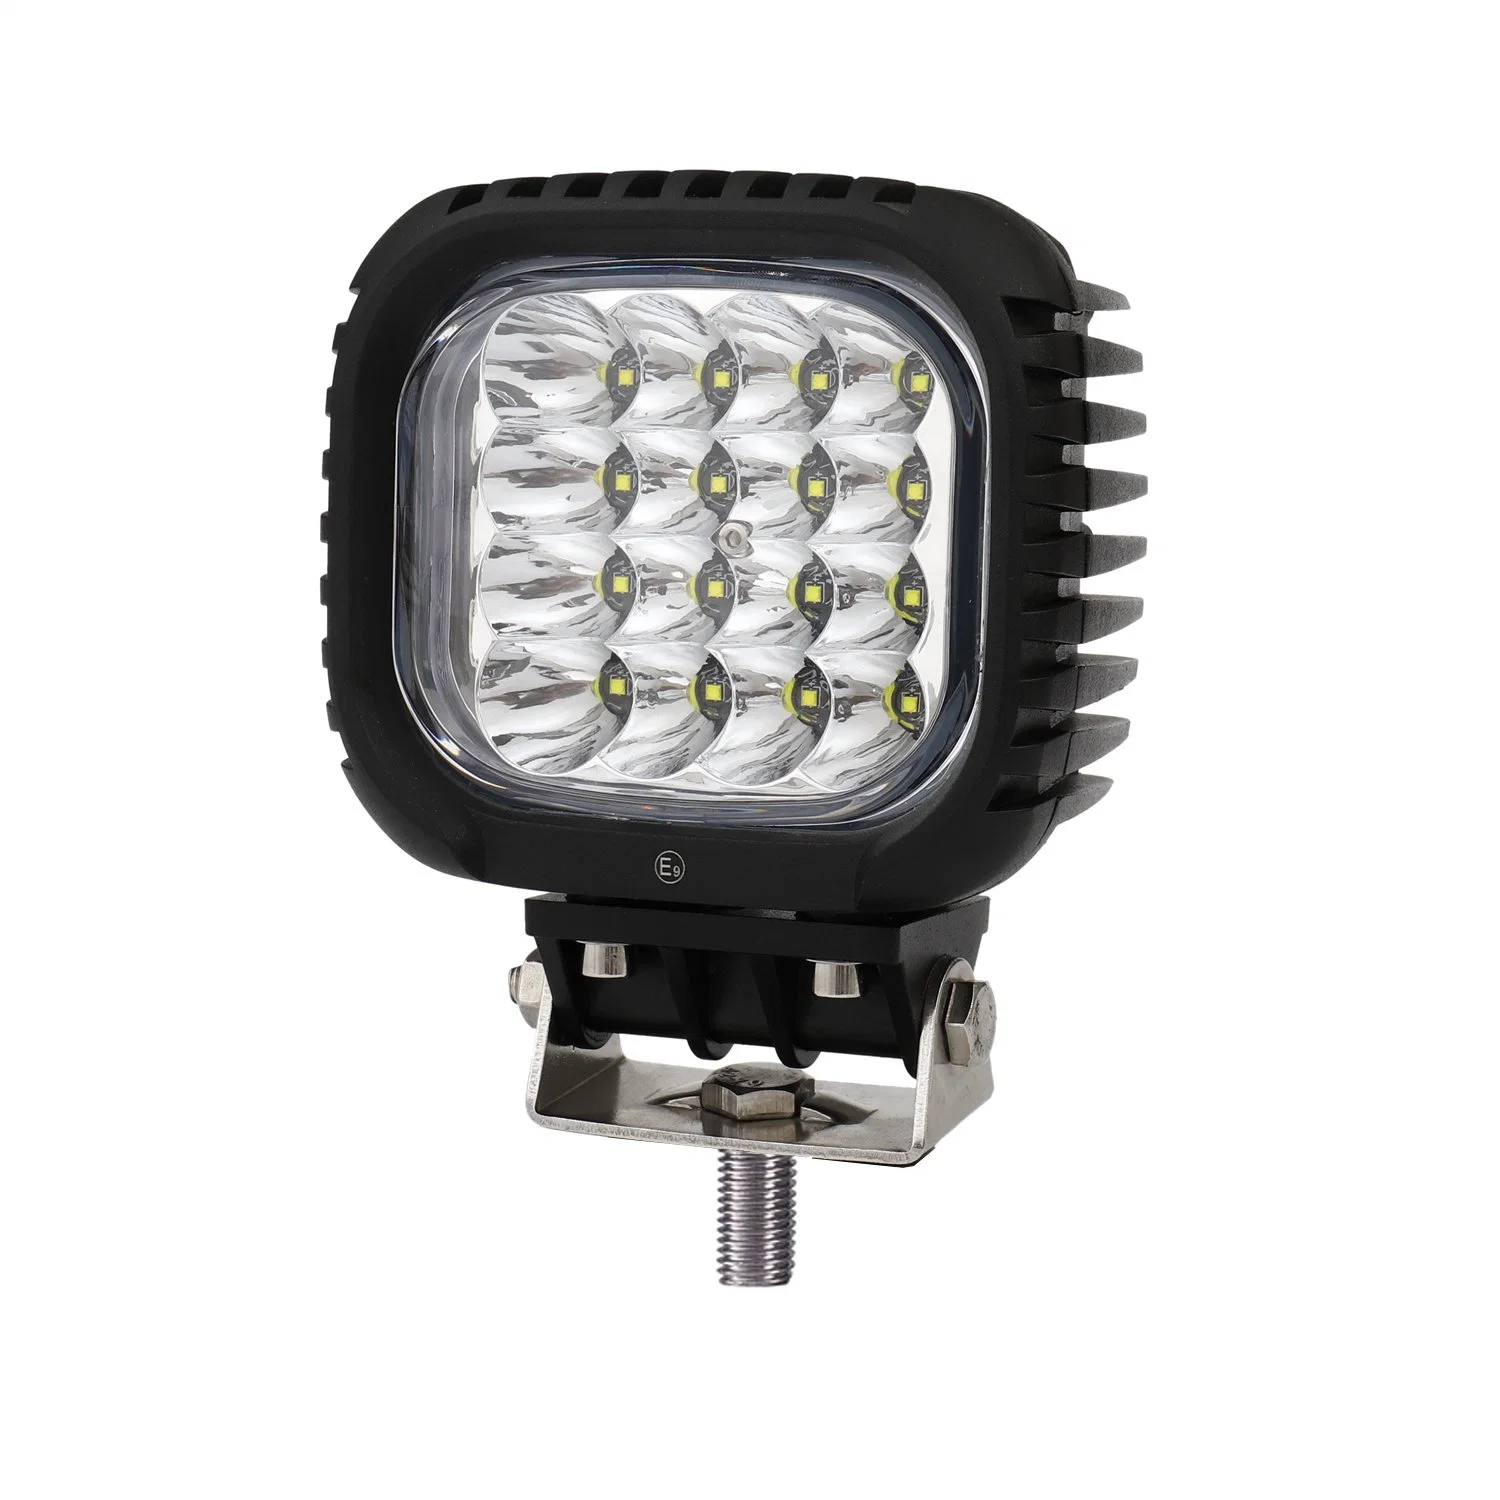 Emark 48 Вт 5 дюймов 12 в/24 в CREE светодиодный фонарь рабочего освещения для Автопогрузчик внедорожник тягач-погрузчик